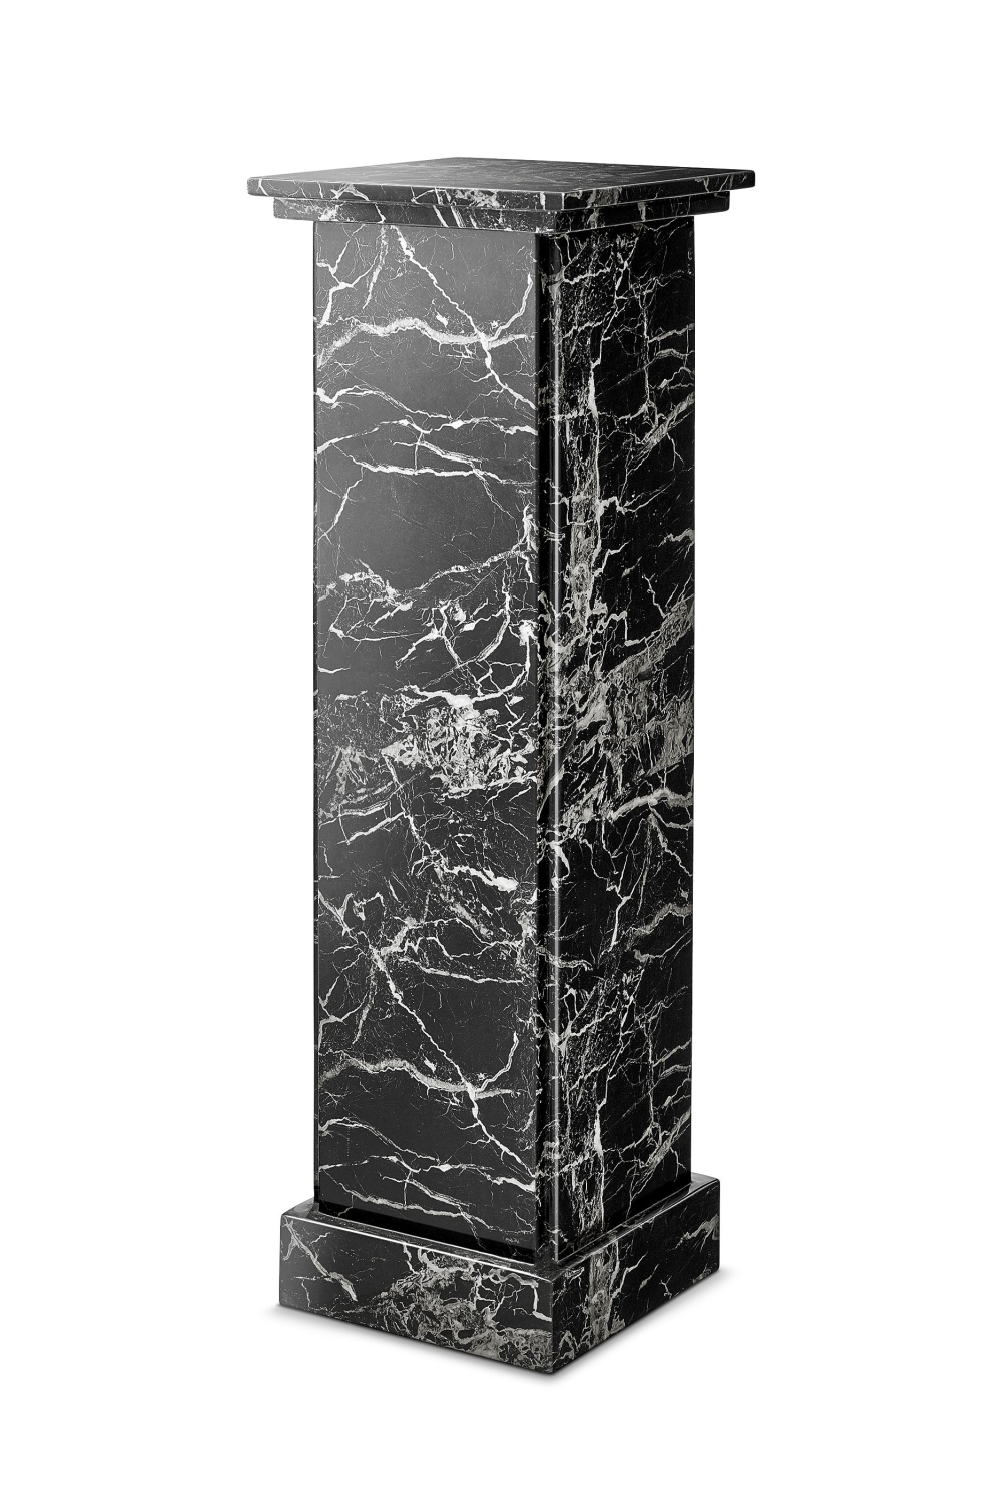 Pedestal de columna 114003 Profhome Columna Elemento decorativo estilo  dórico blanco